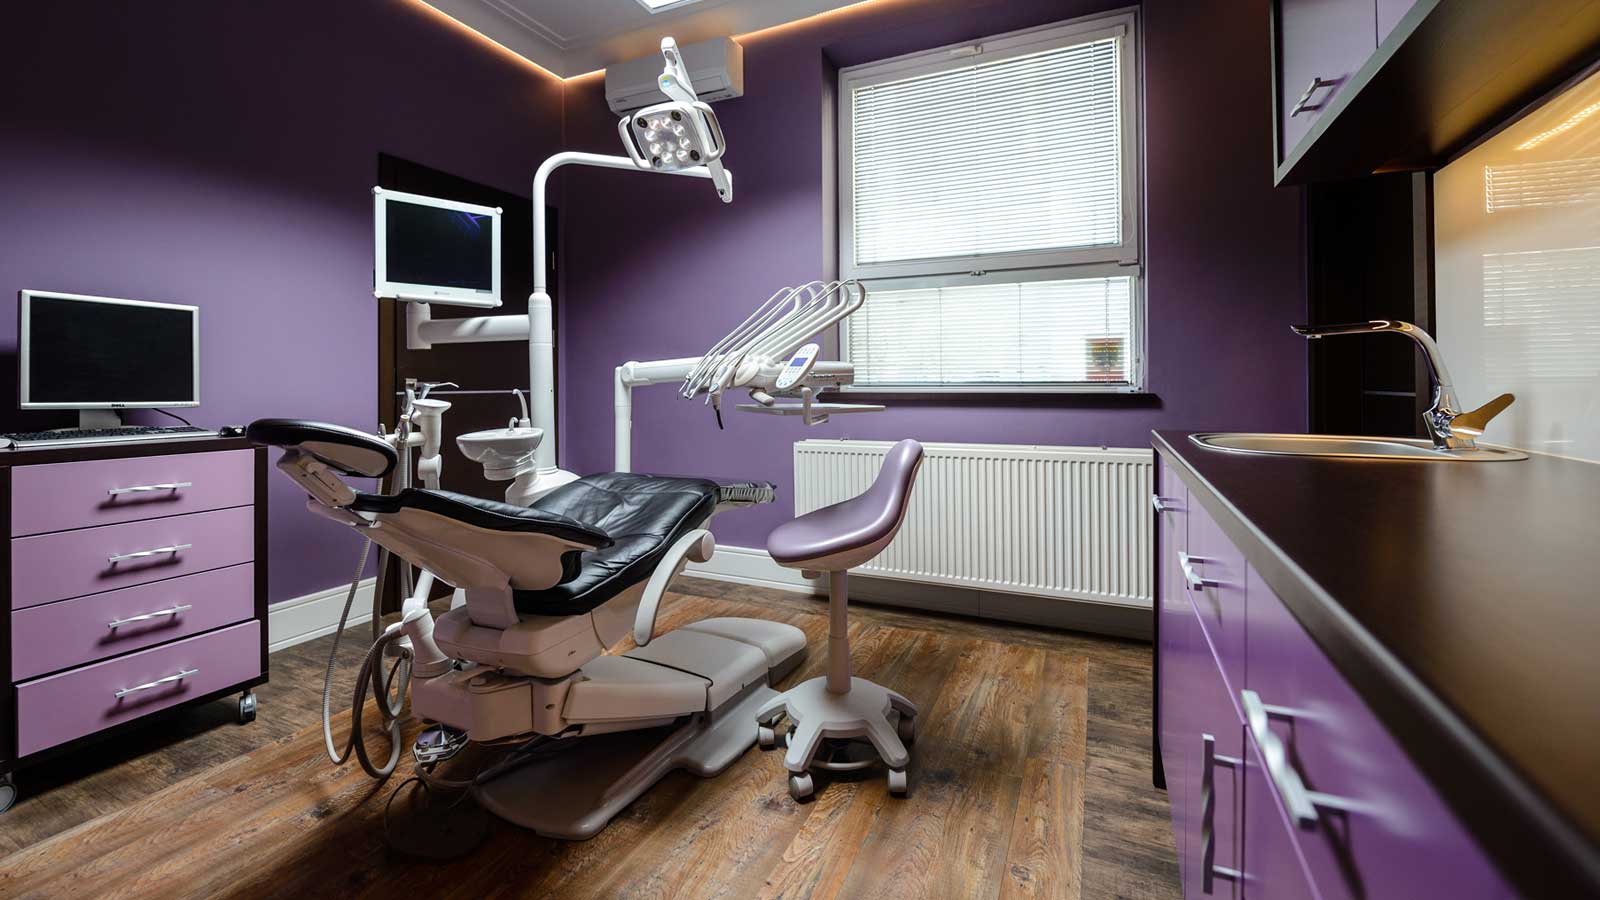 gabinet stomatologiczny nr. 7 w klinice dentystycznej Dental Salon